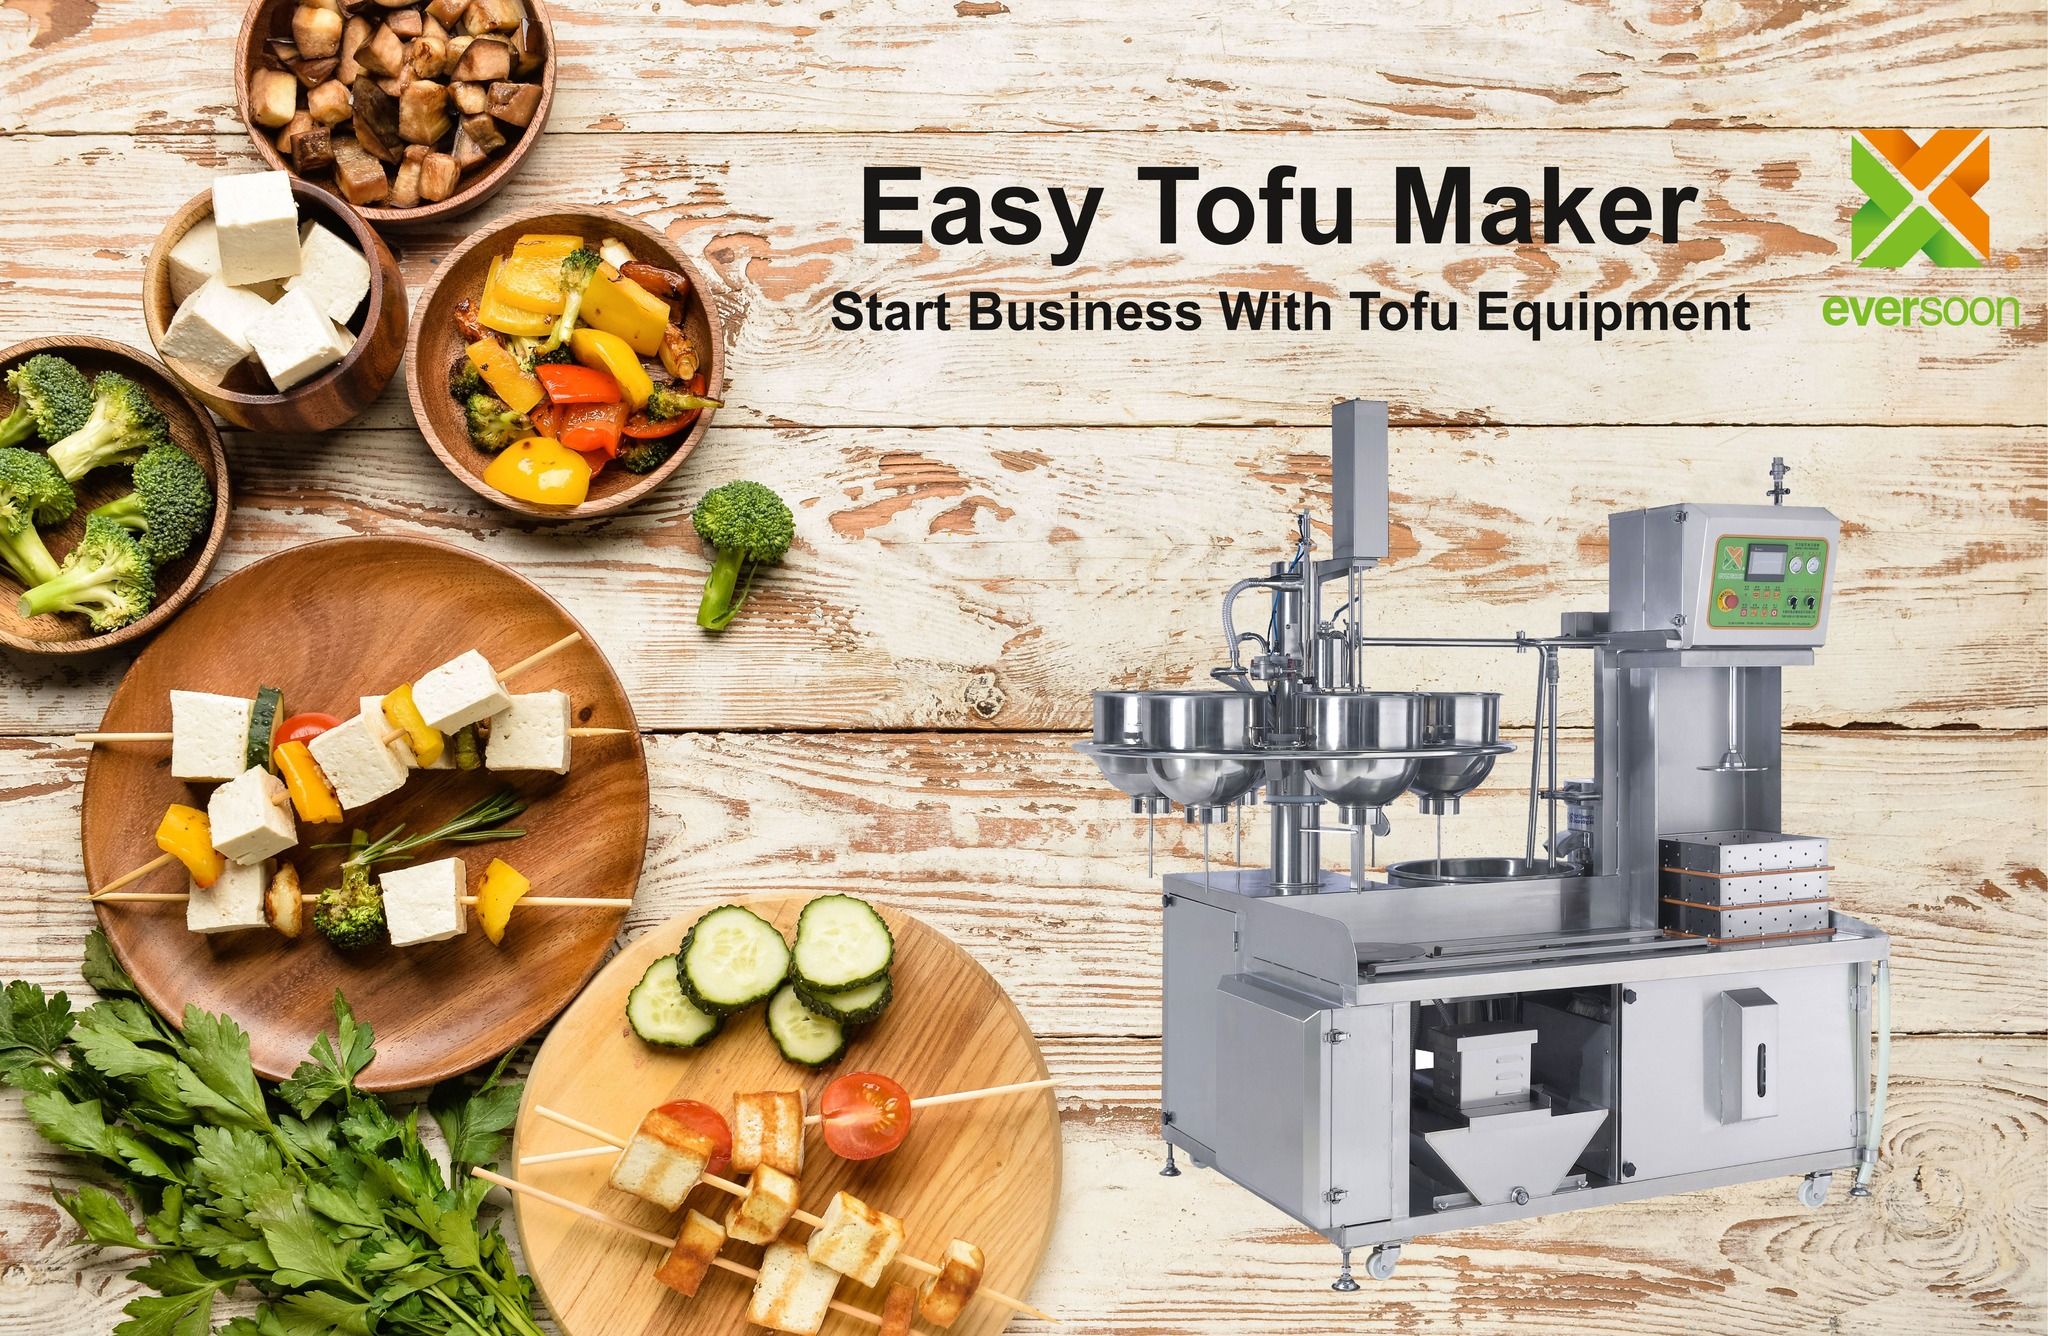 Automatyczna maszyna do produkcji tofu, łatwy producent tofu, maszyna do smażenia tofu, przemysłowa produkcja tofu, mała maszyna do produkcji tofu, sprzęt do produkcji soi, maszyna do produkcji mięsa sojowego, maszyna do produkcji mleka sojowego i tofu, sprzęt do produkcji tofu, maszyna do produkcji tofu, maszyna do produkcji tofu na sprzedaż, producent maszyn do produkcji tofu, producent maszyn do produkcji tofu, cena maszyny do produkcji tofu, maszyny do produkcji tofu, maszyny i urządzenia do produkcji tofu, producent tofu, maszyna do produkcji tofu, produkcja tofu, urządzenia do produkcji tofu, maszyna do produkcji tofu, cena maszyny do produkcji tofu, producenci tofu, produkcja tofu, wyposażenie do produkcji tofu, zakład do produkcji tofu, wyposażenie do produkcji tofu, linia do produkcji tofu, cena linii do produkcji tofu, producent maszyn do produkcji tofu, automatyczna maszyna do produkcji tofu, maszyna do produkcji mięsa wegańskiego, linia do produkcji mięsa wegańskiego, maszyny i urządzenia do produkcji warzywnego tofu, komercyjna maszyna do produkcji tofu, automatyczna maszyna do produkcji mleka sojowego, automatyczna maszyna do produkcji mleka sojowego, łatwy producent tofu, produkcja mleka sojowego, maszyna do napojów sojowych, maszyna do produkcji mleka sojowego i tofu, komercyjna maszyna do produkcji mleka sojowego, maszyna do gotowania mleka sojowego, maszyna do produkcji mleka sojowego, maszyna do produkcji mleka sojowego z Tajwanu, maszyny do produkcji mleka sojowego, maszyny i urządzenia do produkcji mleka sojowego, producent mleka sojowego, maszyna do produkcji mleka sojowego, producenci mleka sojowego, Produkcja mleka sojowego, wyposażenie do produkcji mleka sojowego, Linia do produkcji mleka sojowego, cena maszyny do produkcji mleka sojowego, maszyna do przetwarzania soi, maszyna do produkcji mleka sojowego, maszyna do produkcji mleka sojowego i tofu, komercyjny producent mleka sojowego, komercyjna maszyna do produkcji mleka sojowego, komercyjna maszyna do produkcji mleka sojowego, komercyjna maszyna do mleka sojowego, kocioł do mleka sojowego do użytku biznesowego, młynek do mleka sojowego do użytku biznesowego, maszyna do mleka sojowego do użytku biznesowego, maszyny do mleka sojowego do użytku biznesowego, sprzęt do produkcji mleka sojowego w sklepie